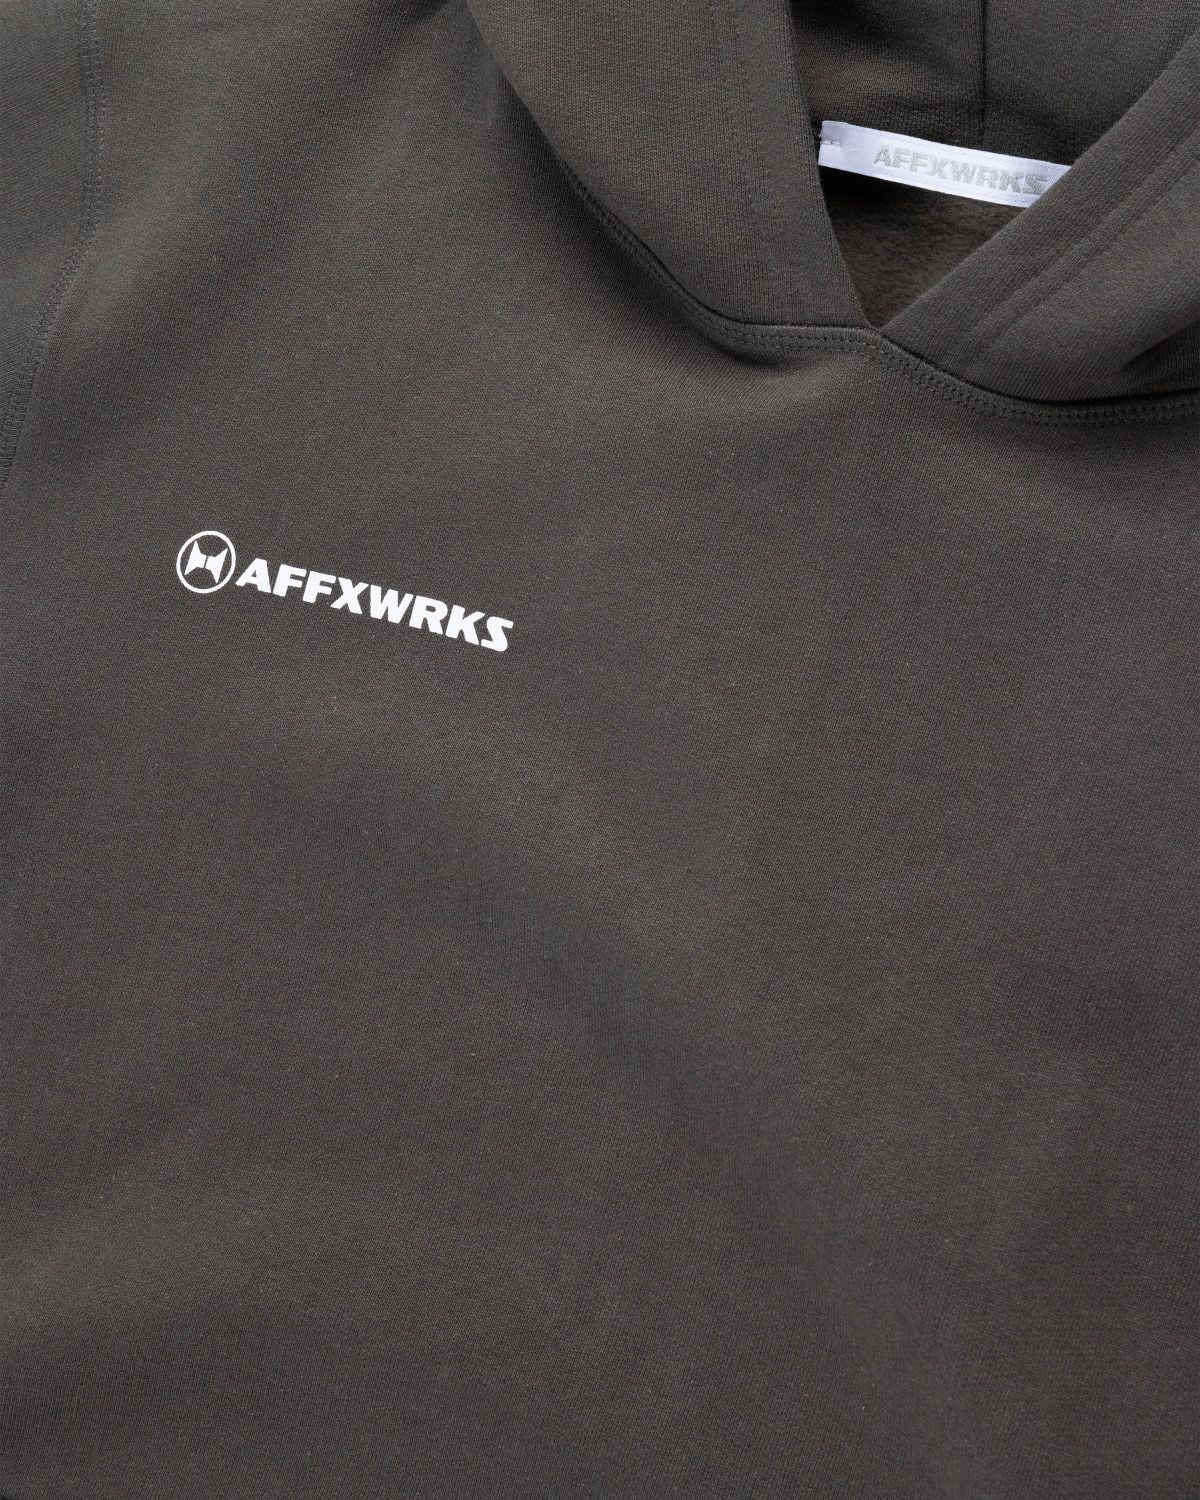 AFFXWRKS – AFFXWRKS Hoodie Washed Black - Sweats - Black - Image 7